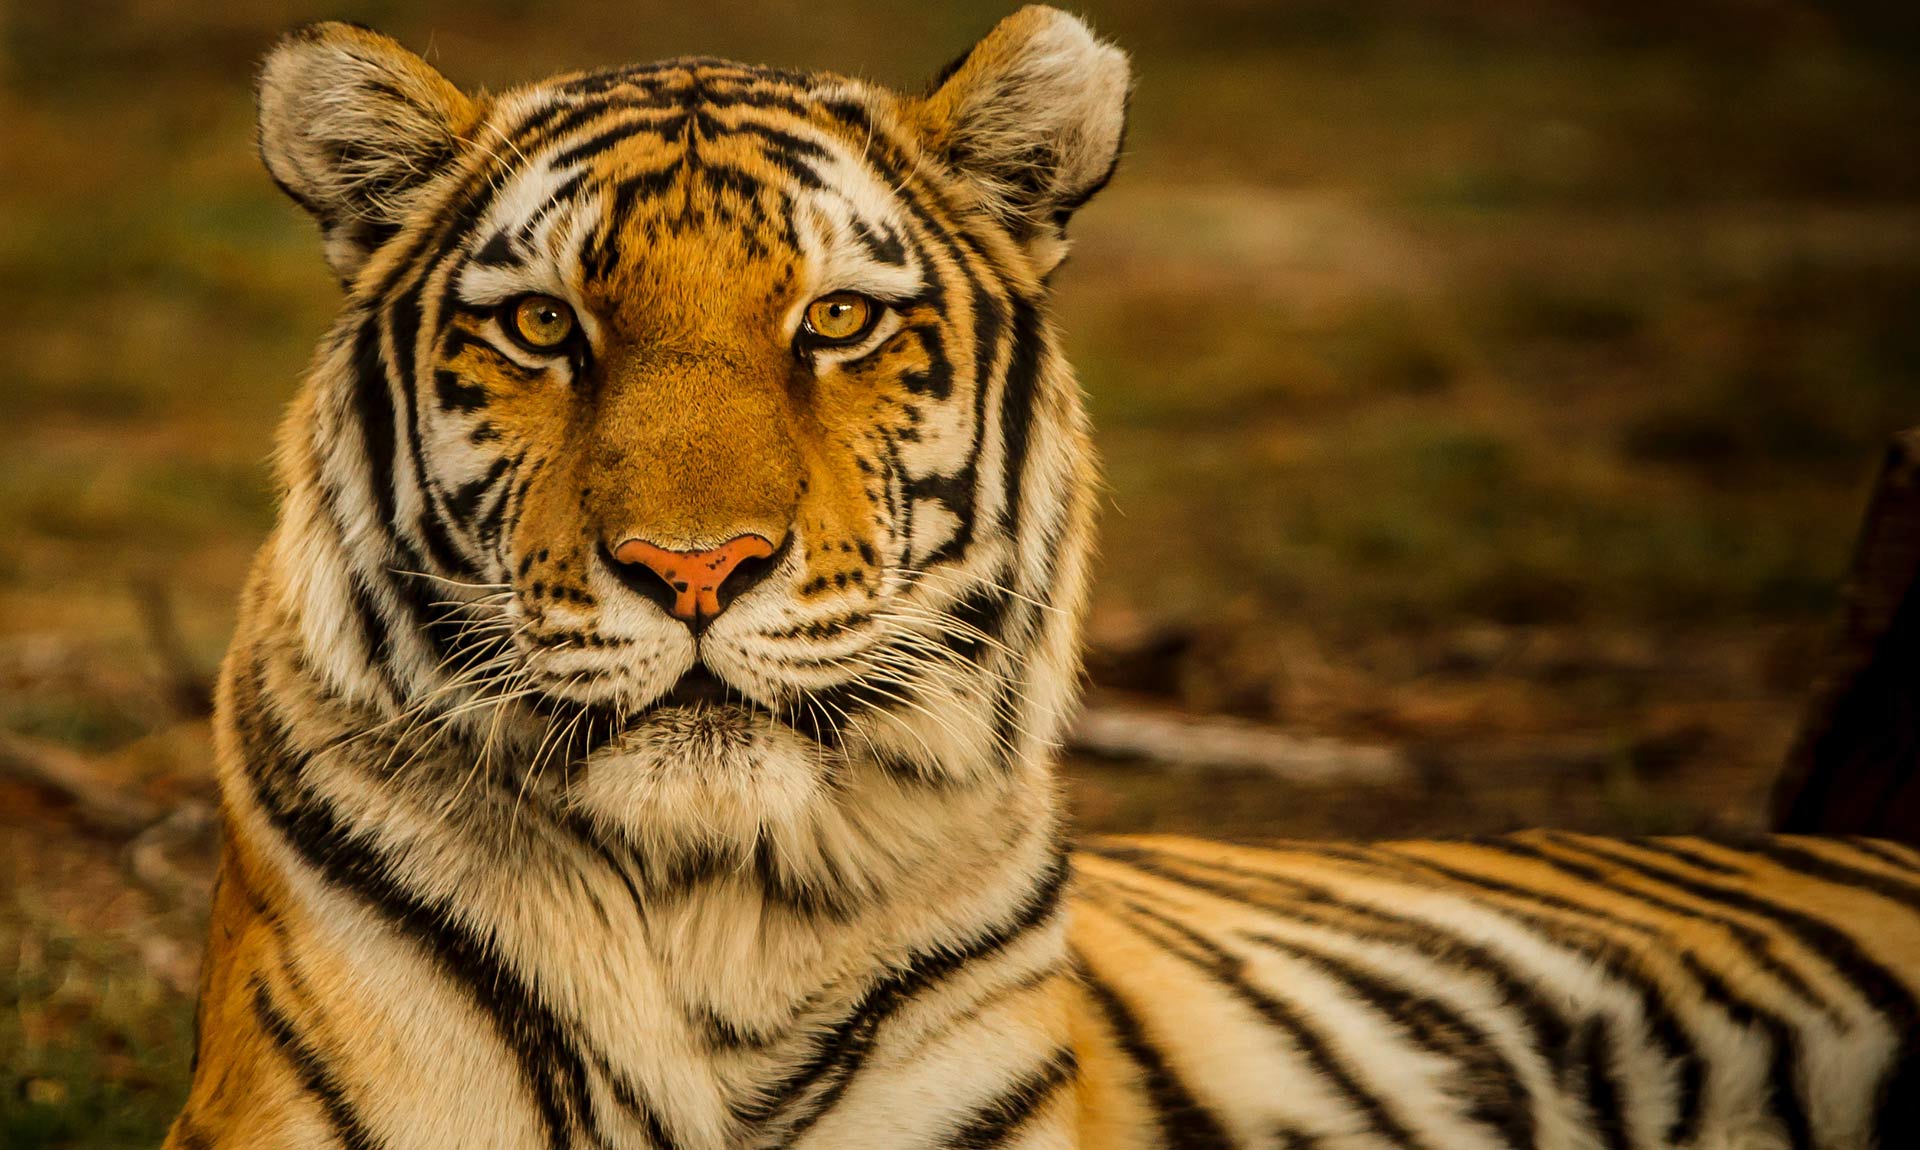 Tiger - Endangered Species - Endangered Wonders